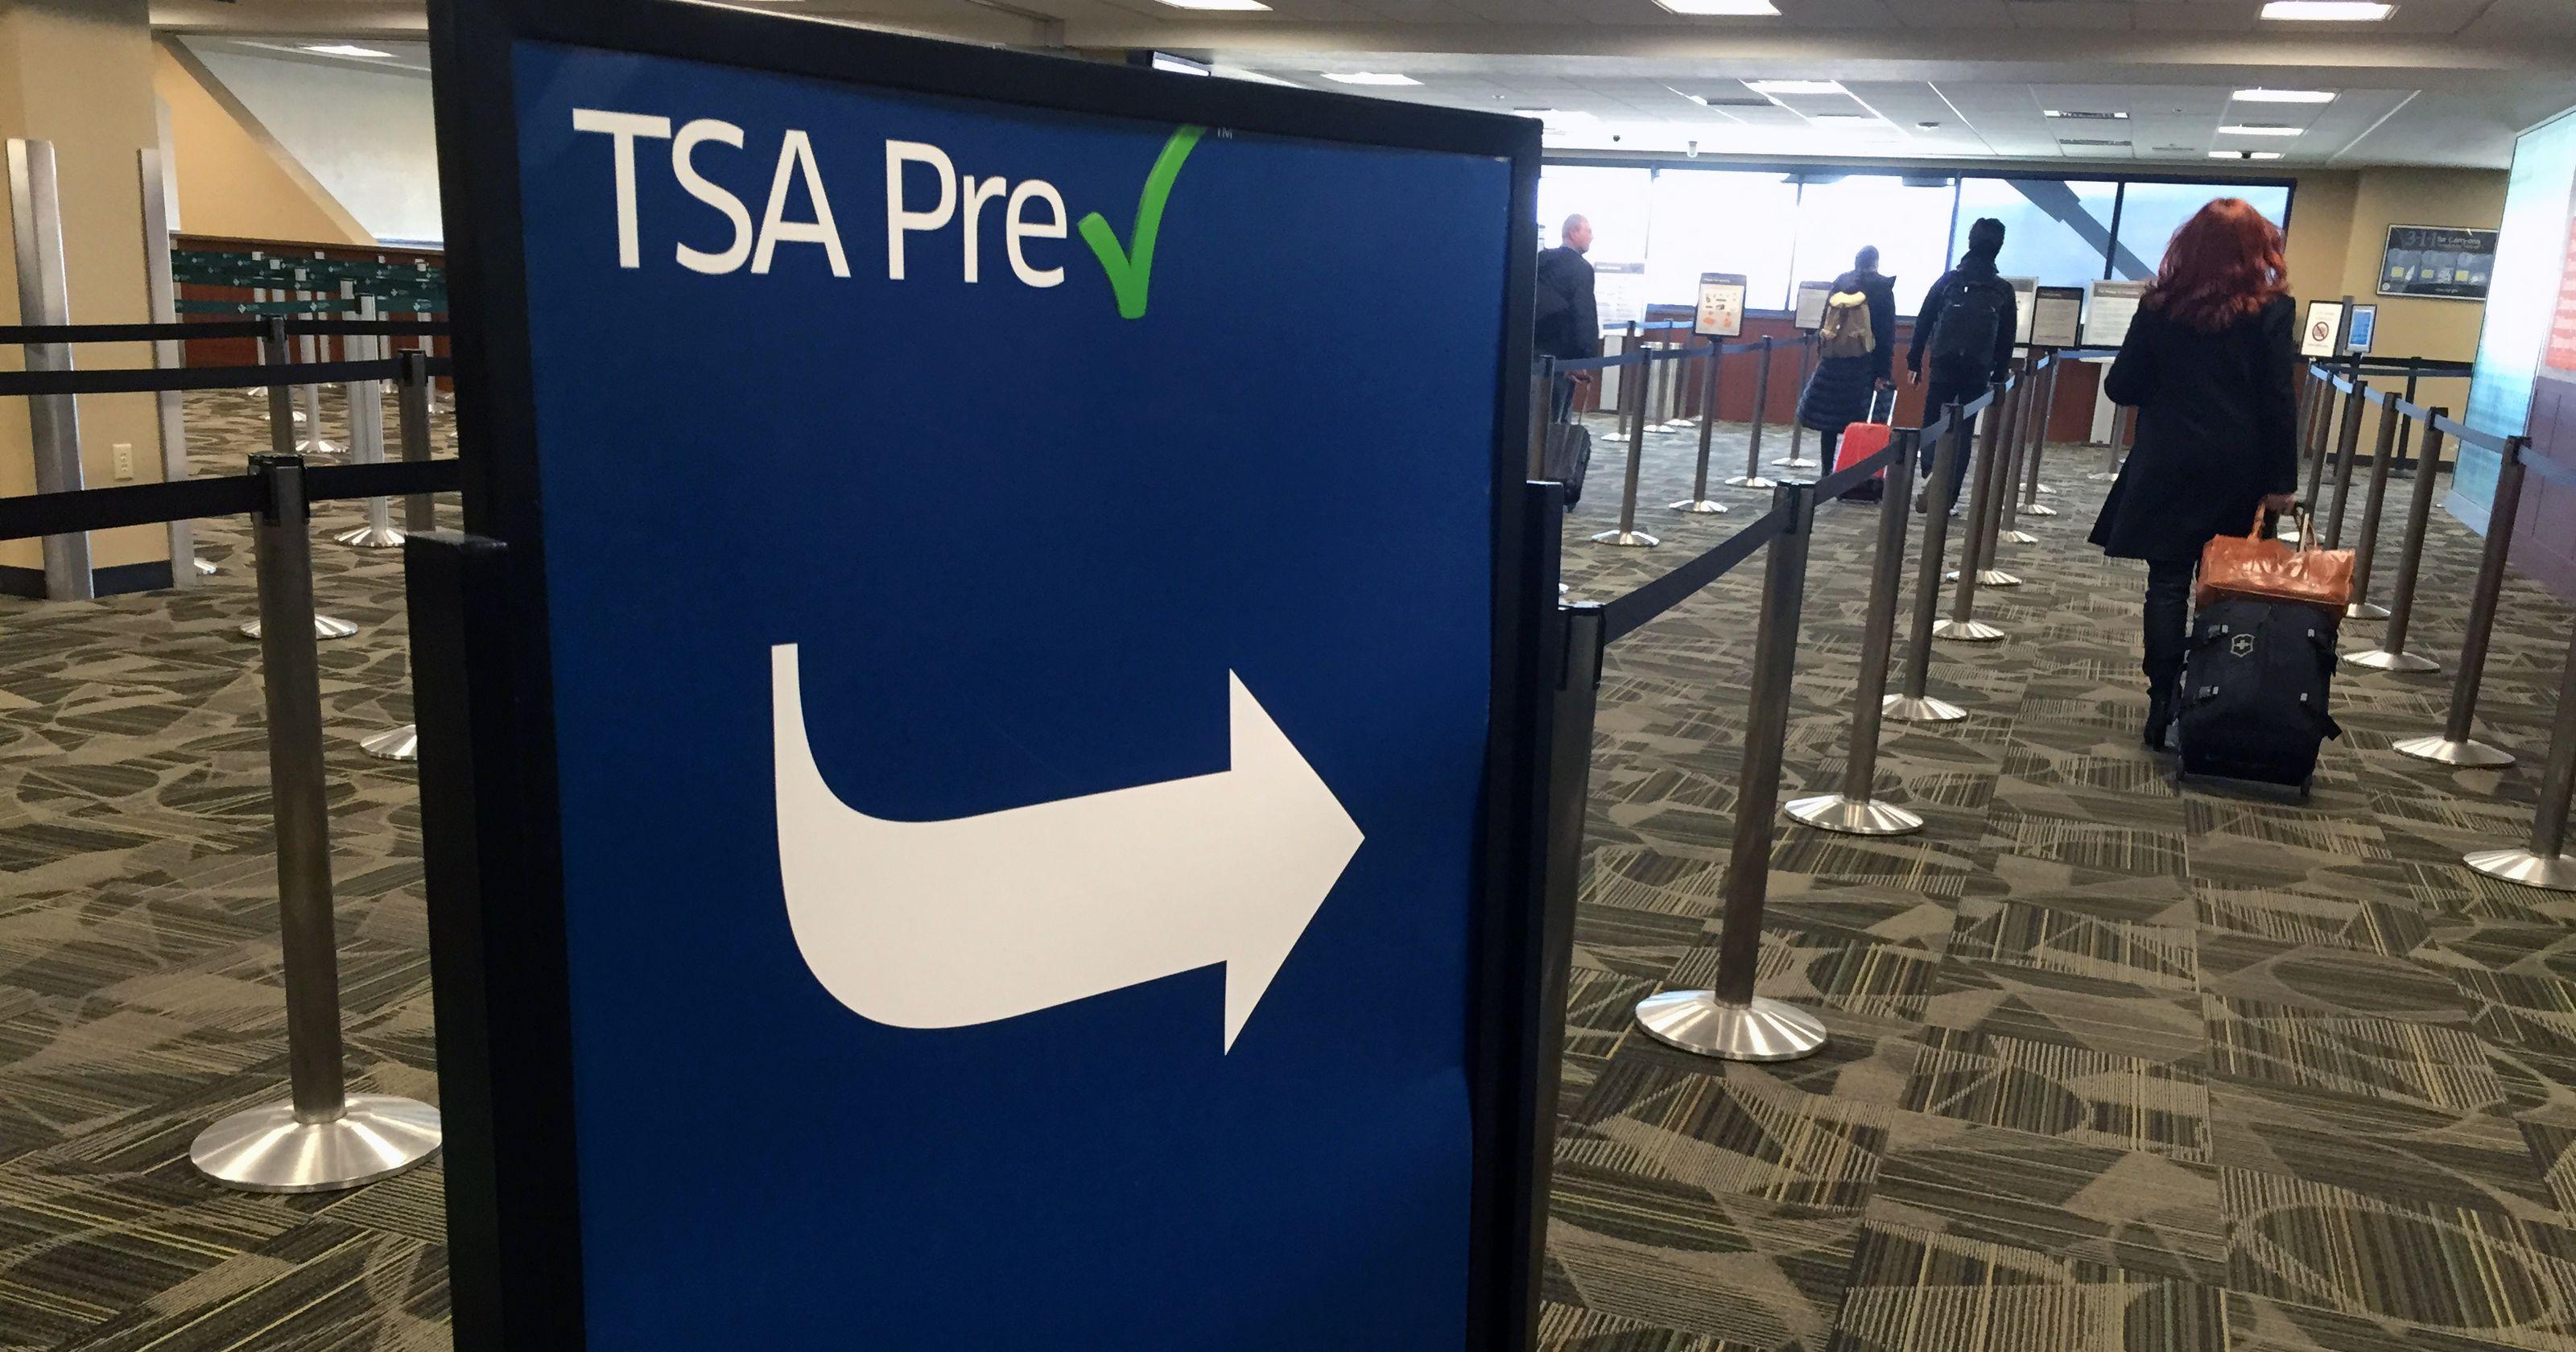 PreCheck Logo - TSA PreCheck Could Become More Exclusive, Regular Lines Longer